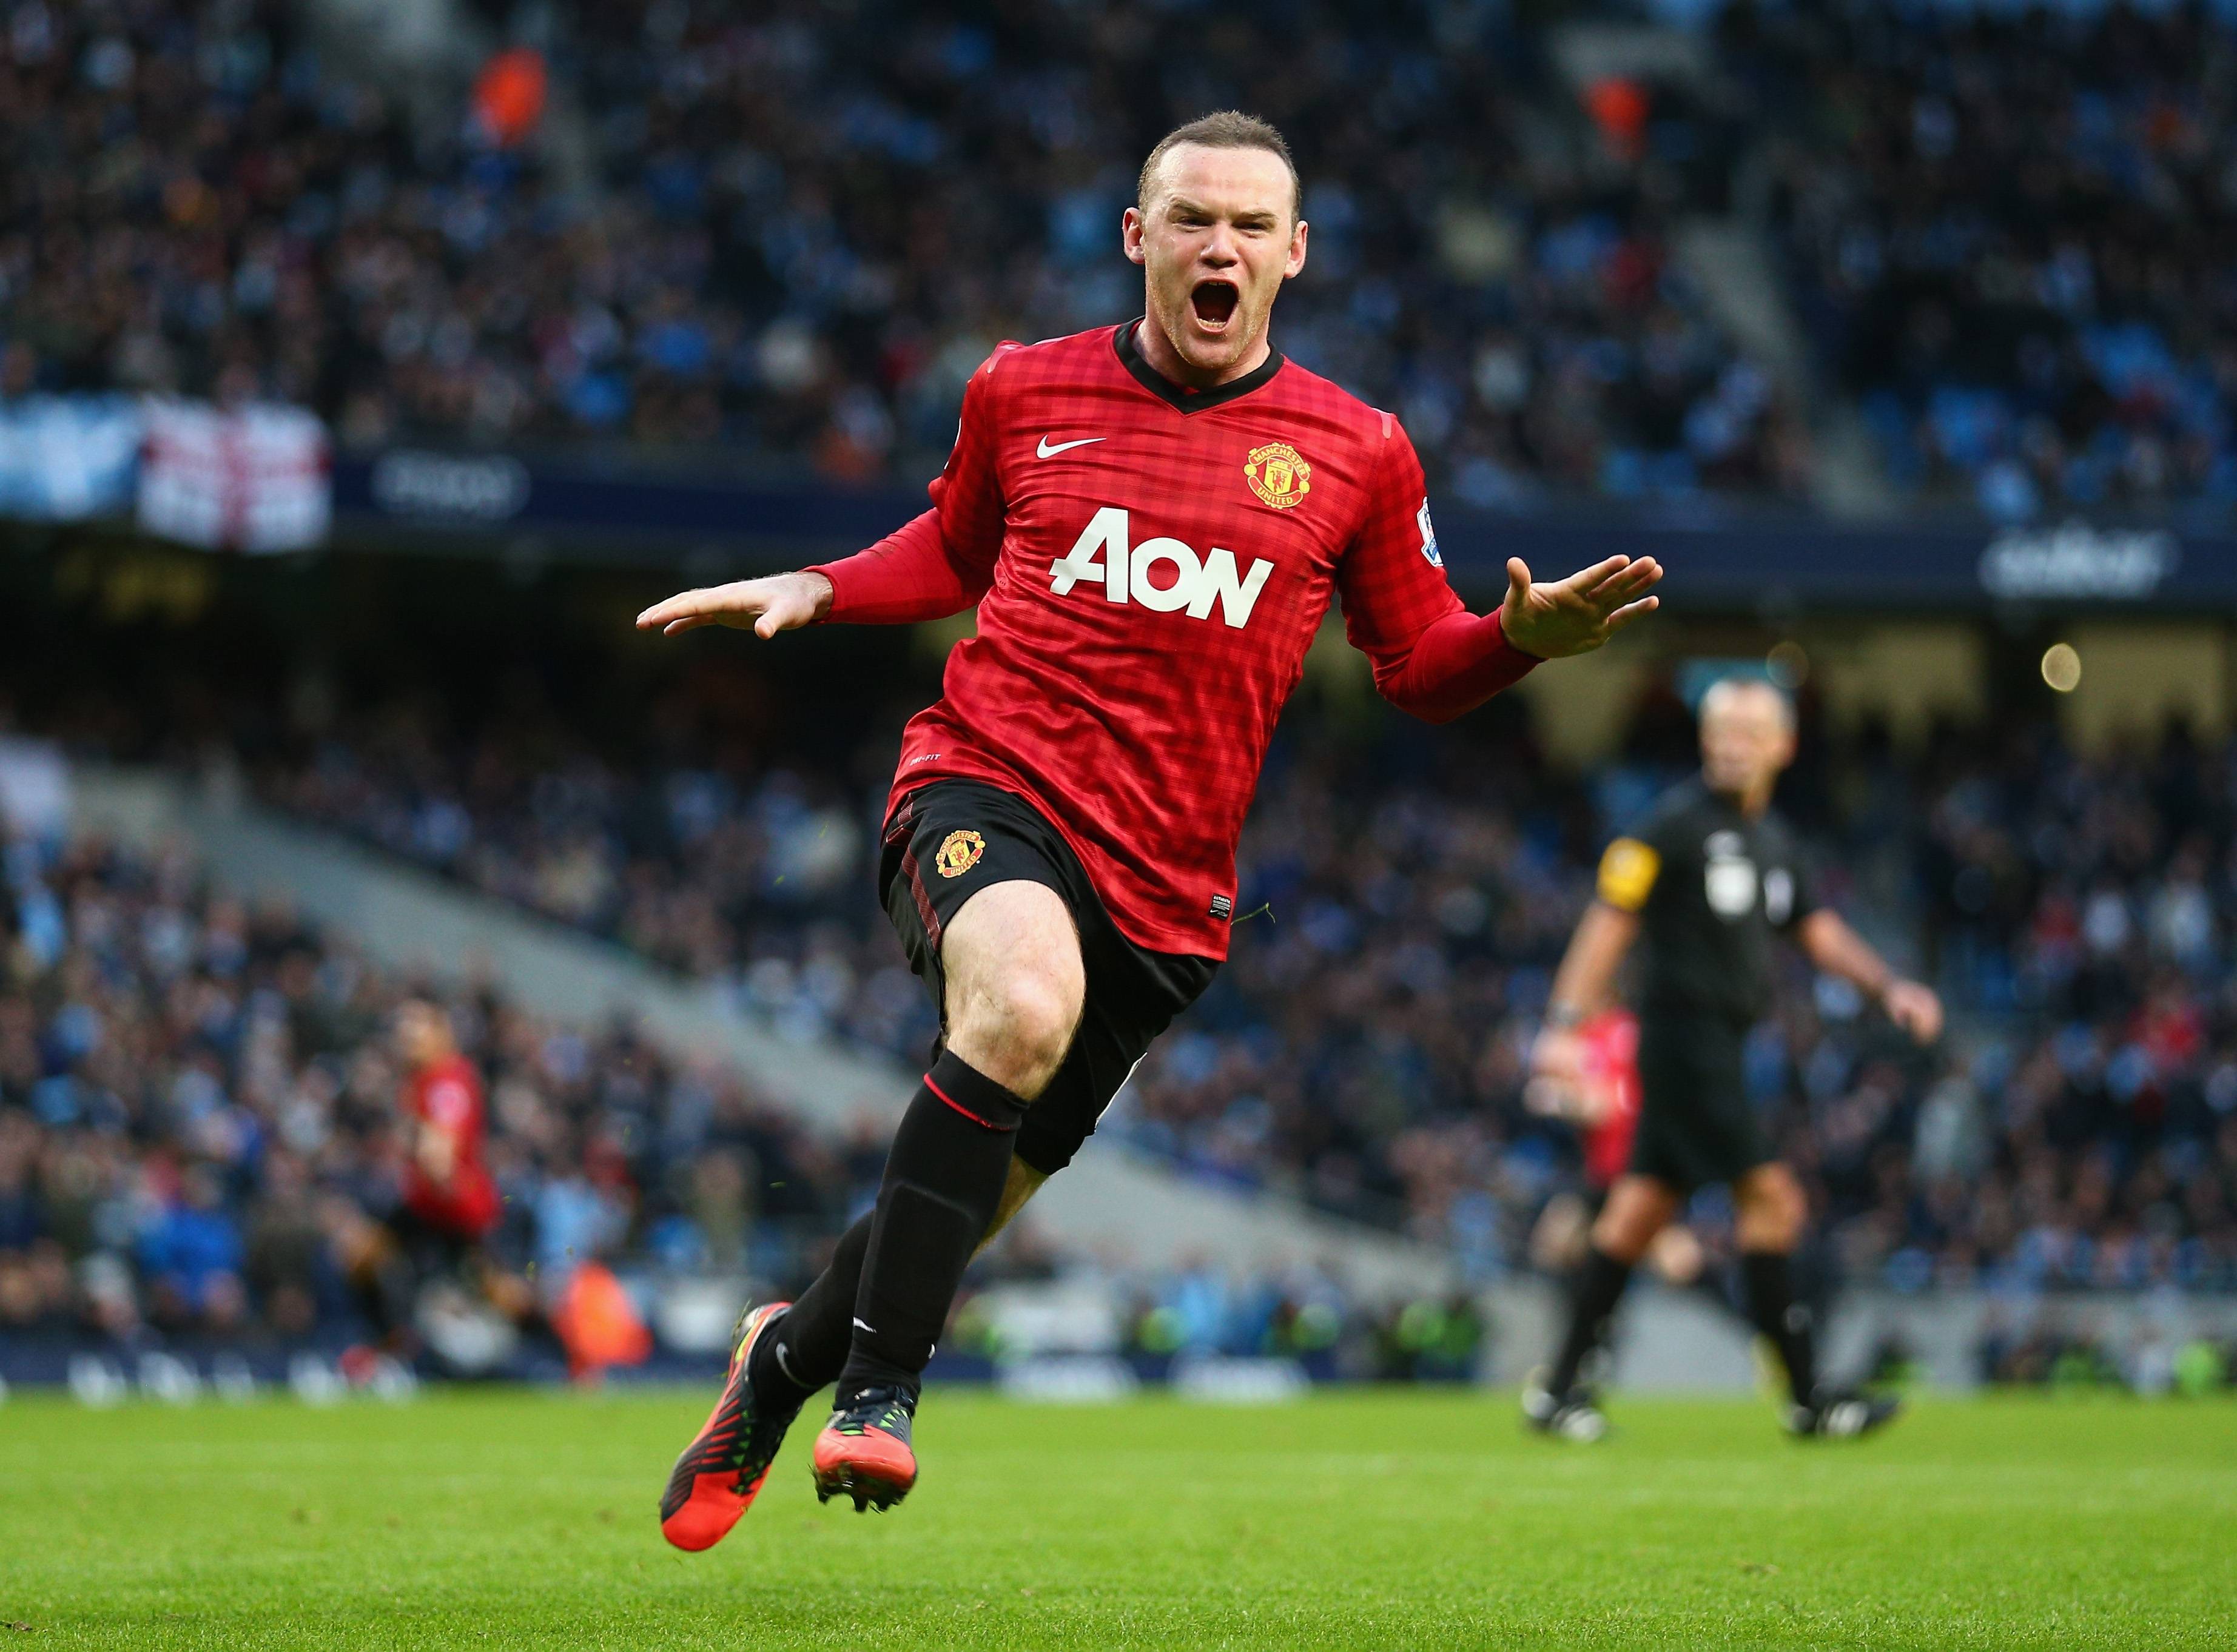 Wayne Rooney Goal Celebration Manchester United Wayne Rooney